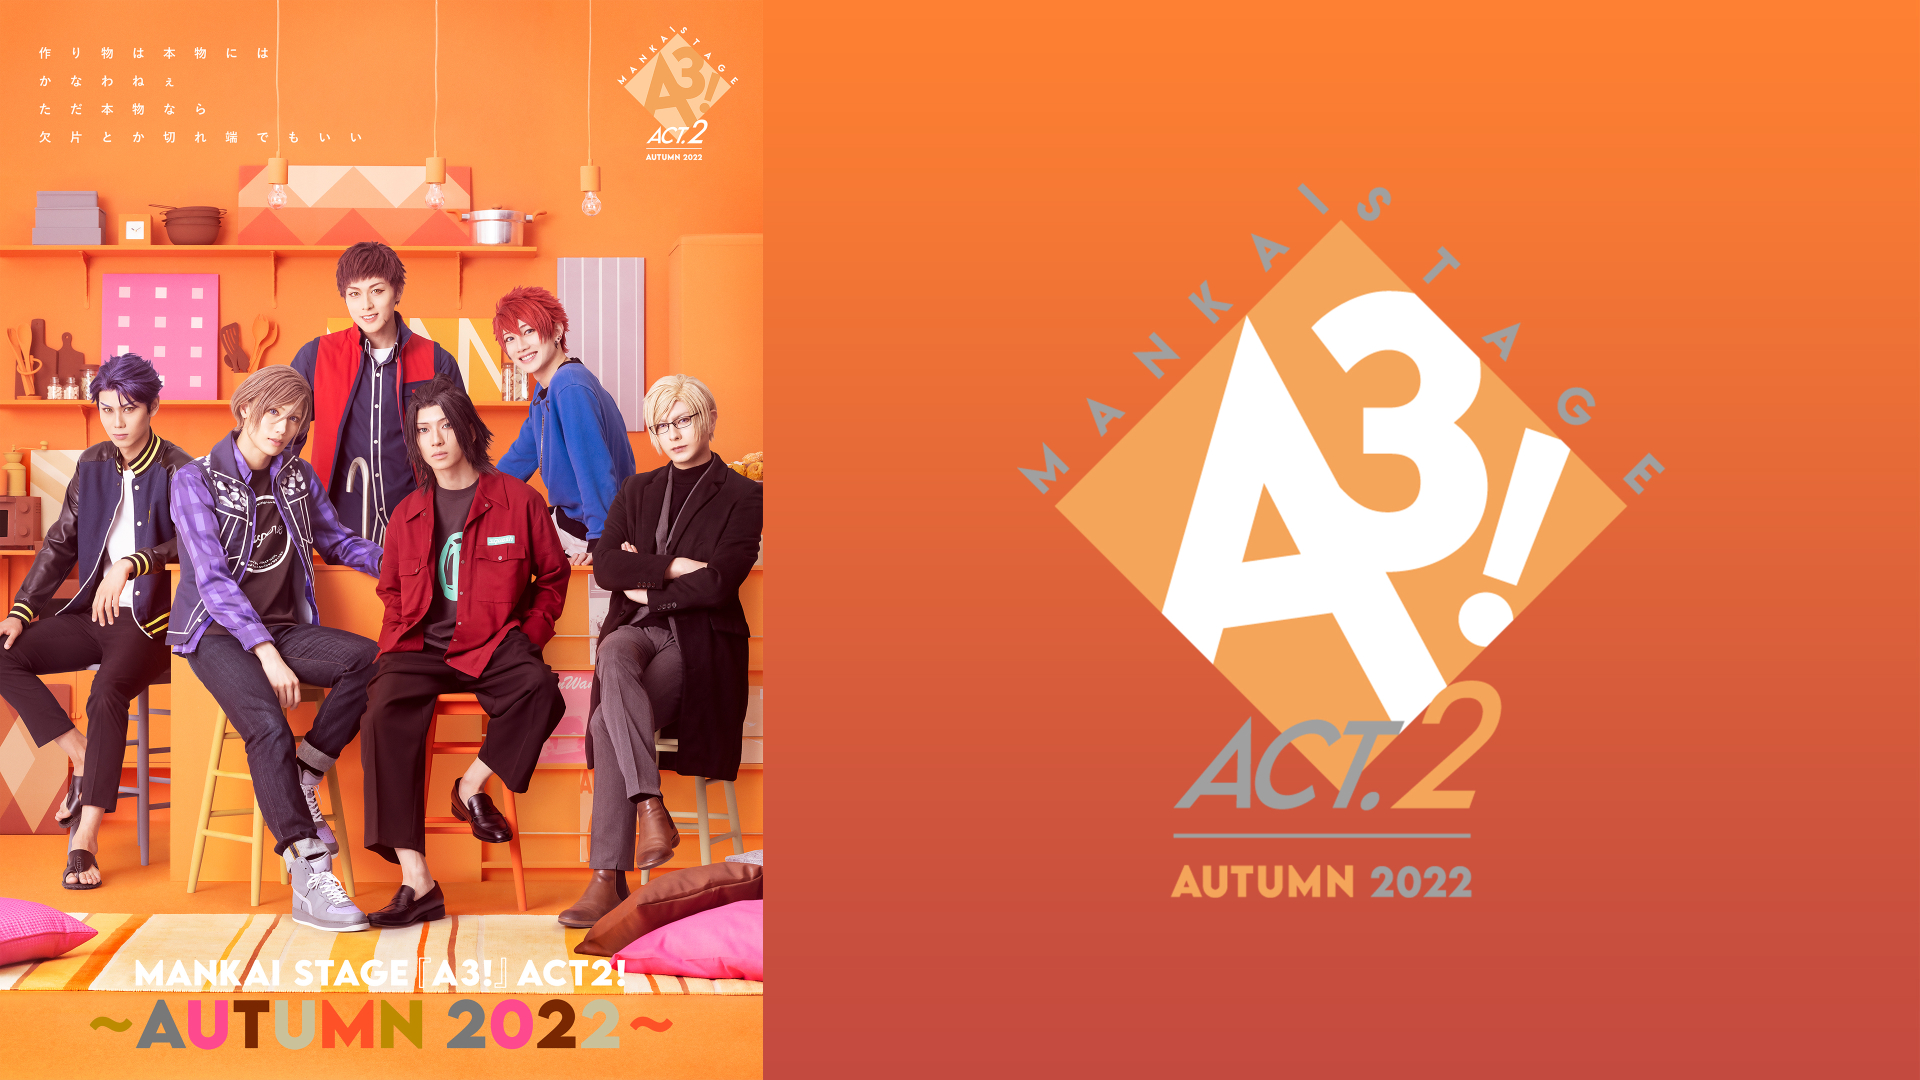 MANKAI STAGE『A3!』ACT2! ～AUTUMN 2022～